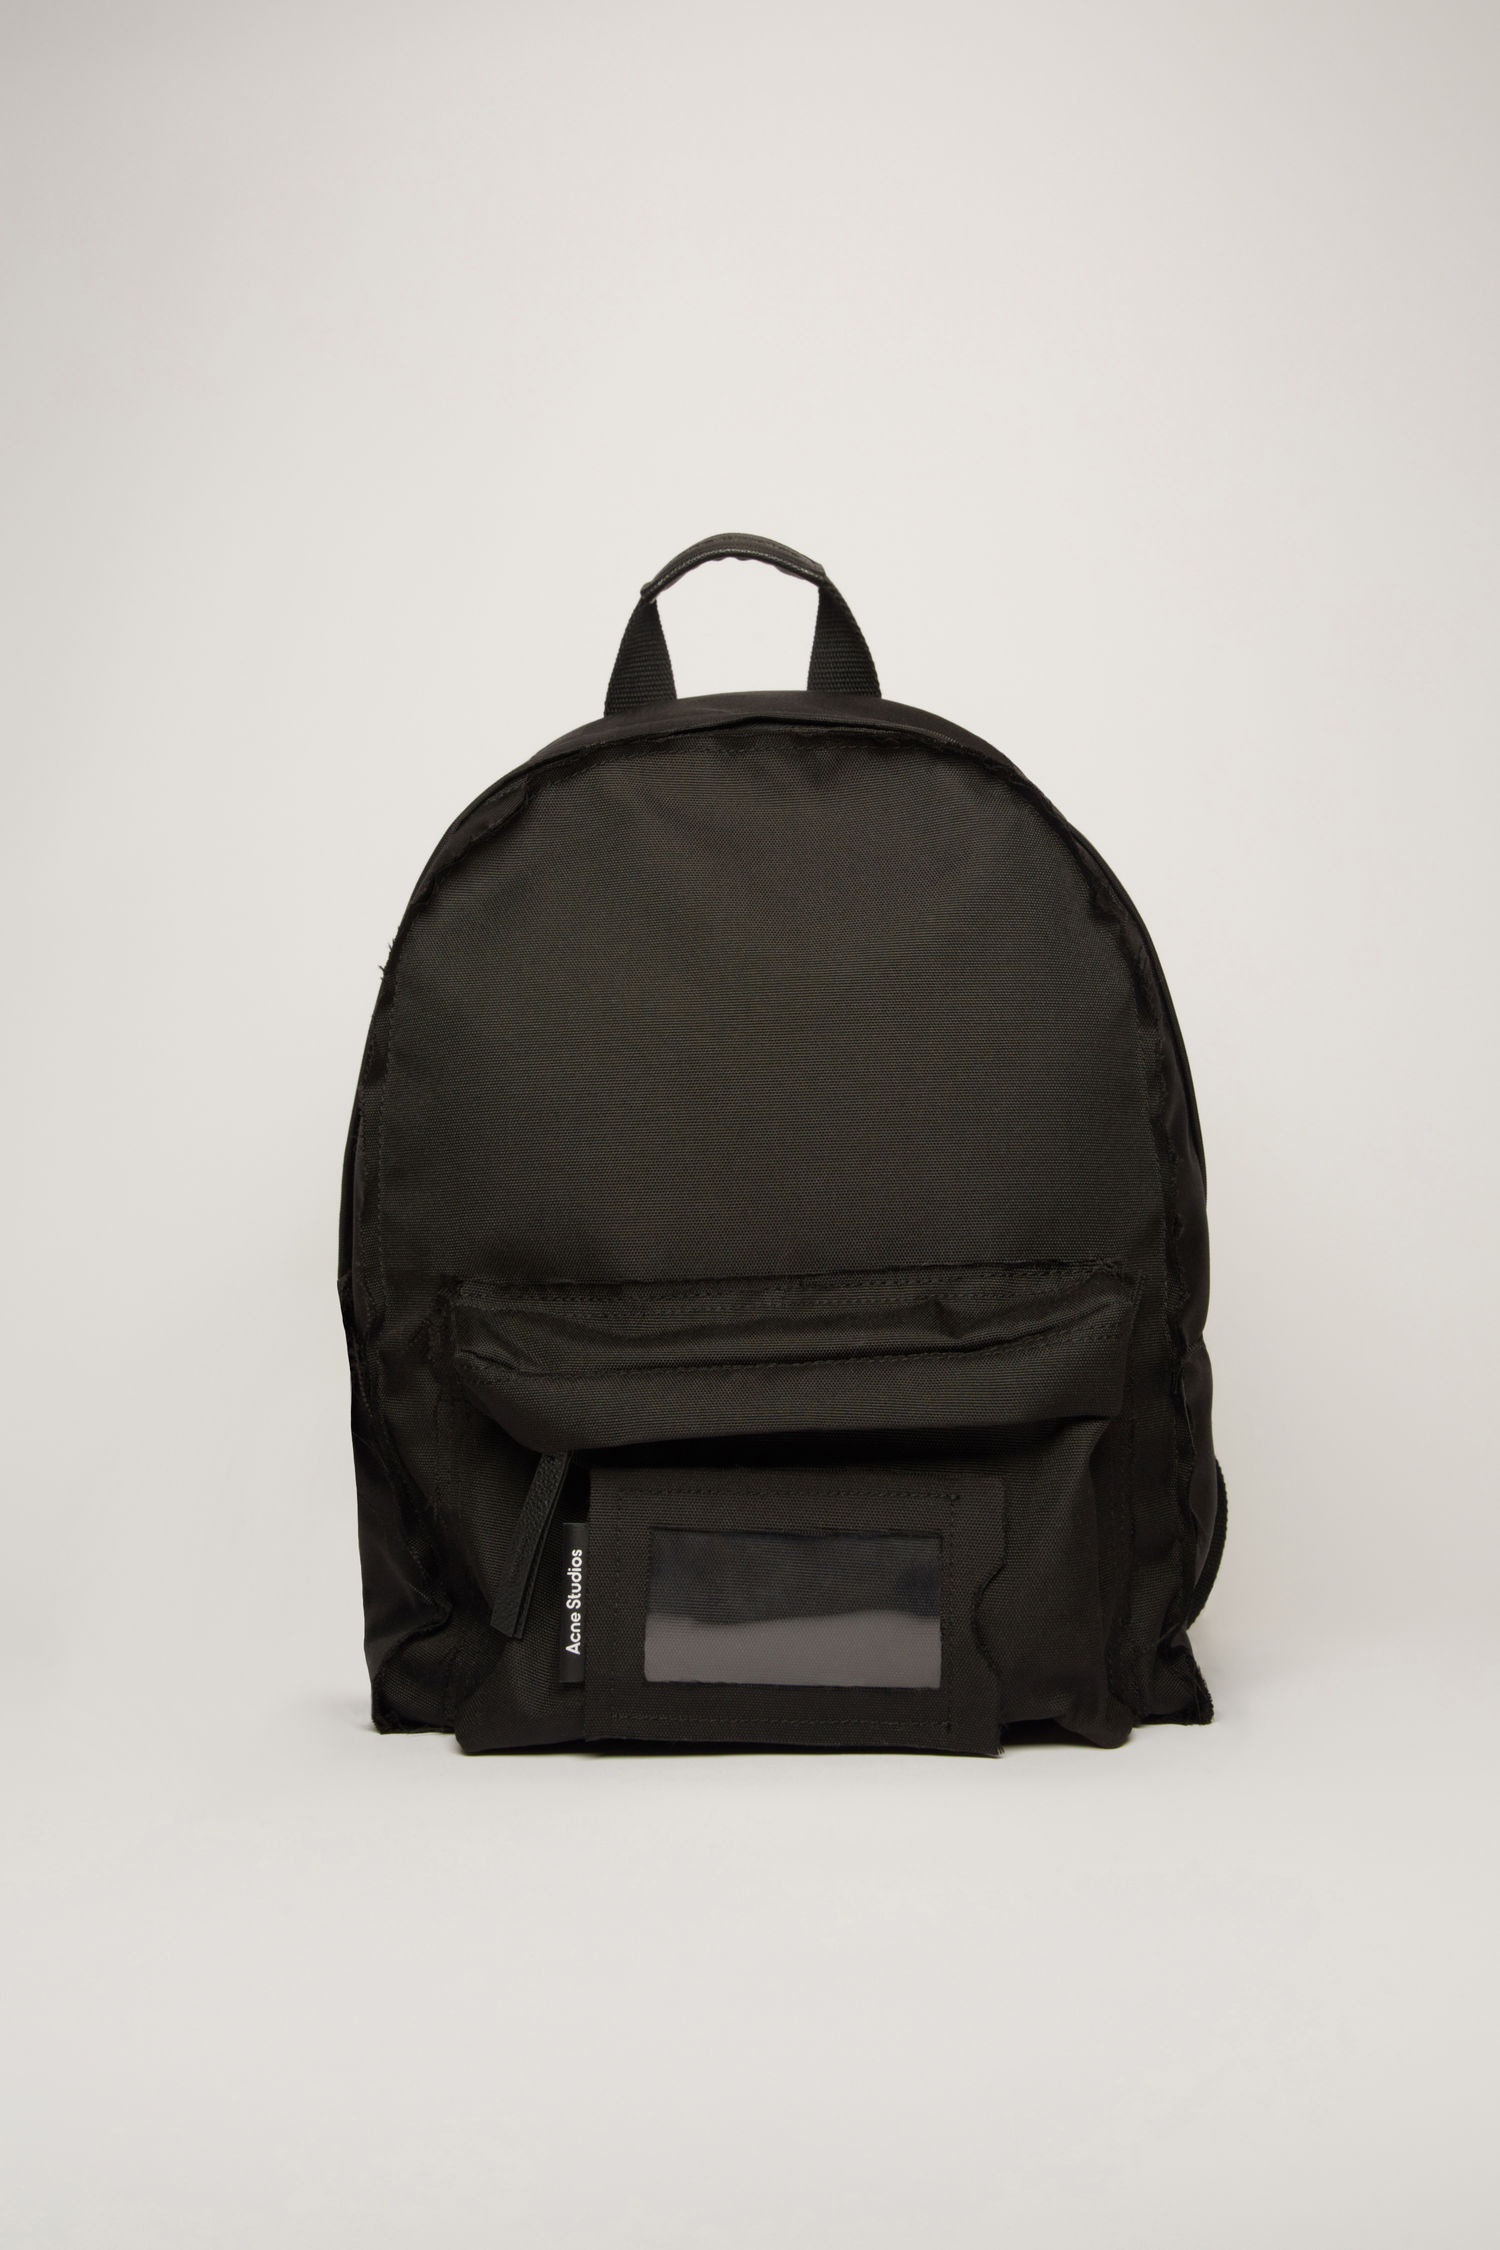 Backpack black - 1